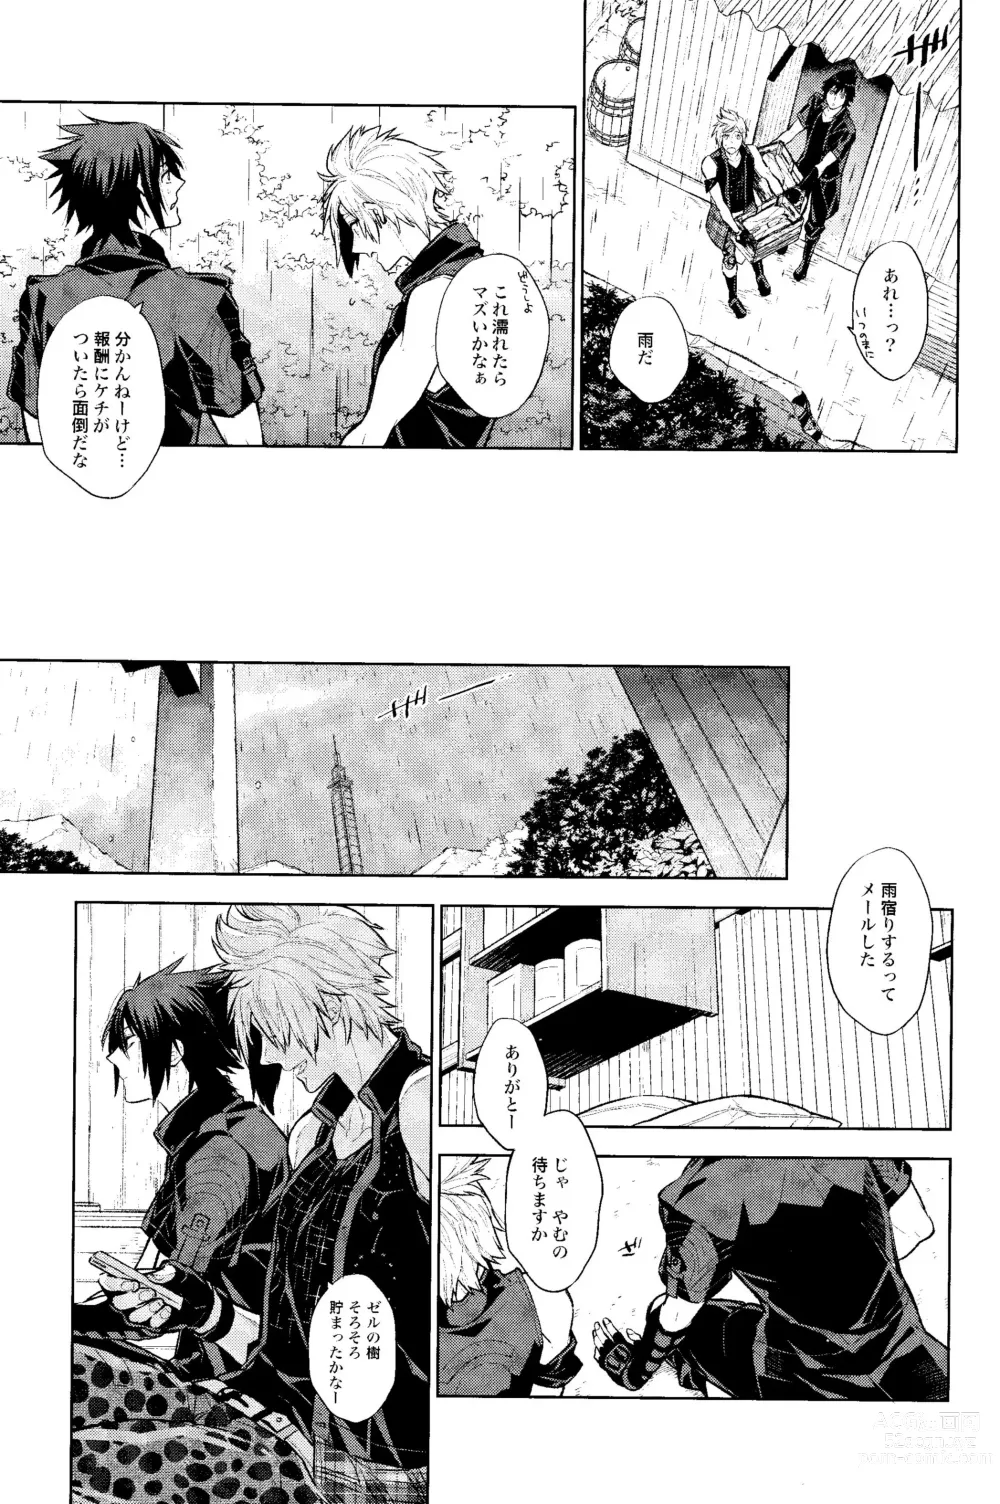 Page 8 of doujinshi Passing Rain